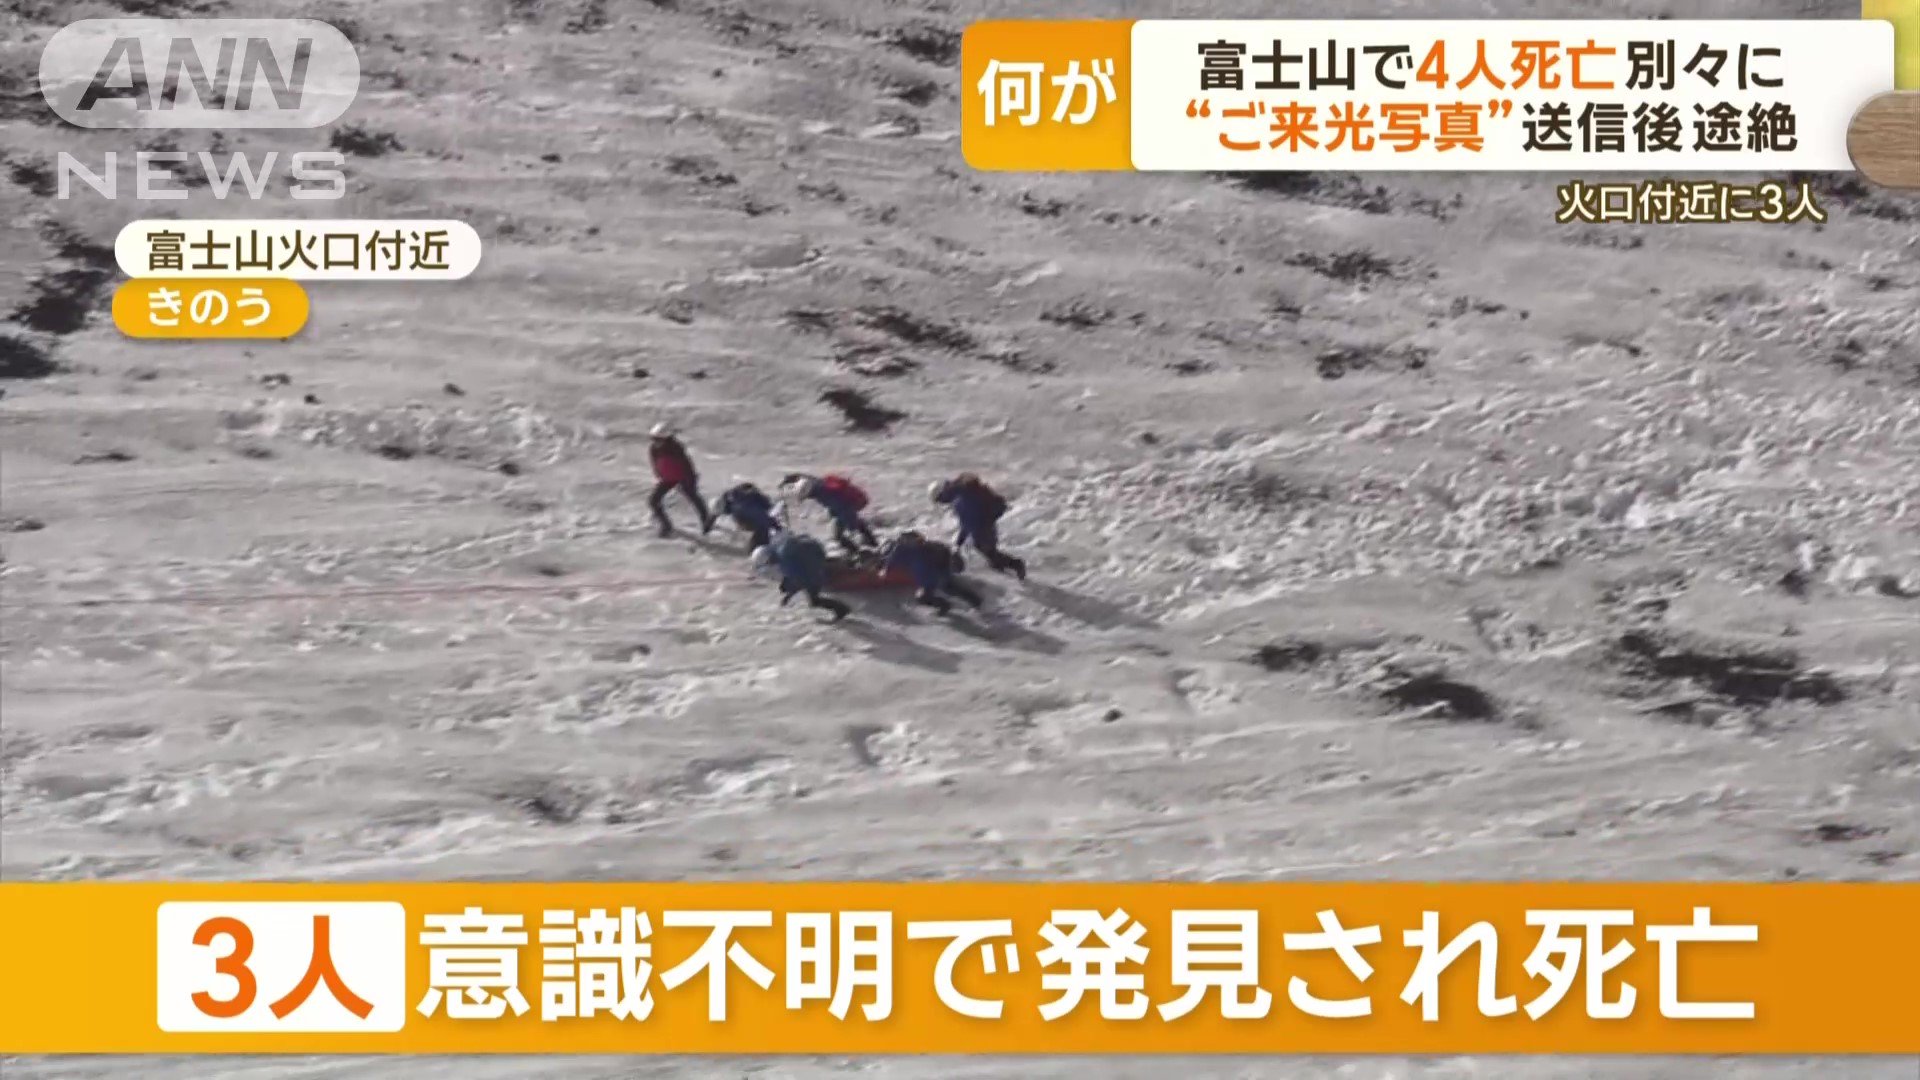 富士山の静岡県側の火口付近で、3人が意識不明の状態で見つかった